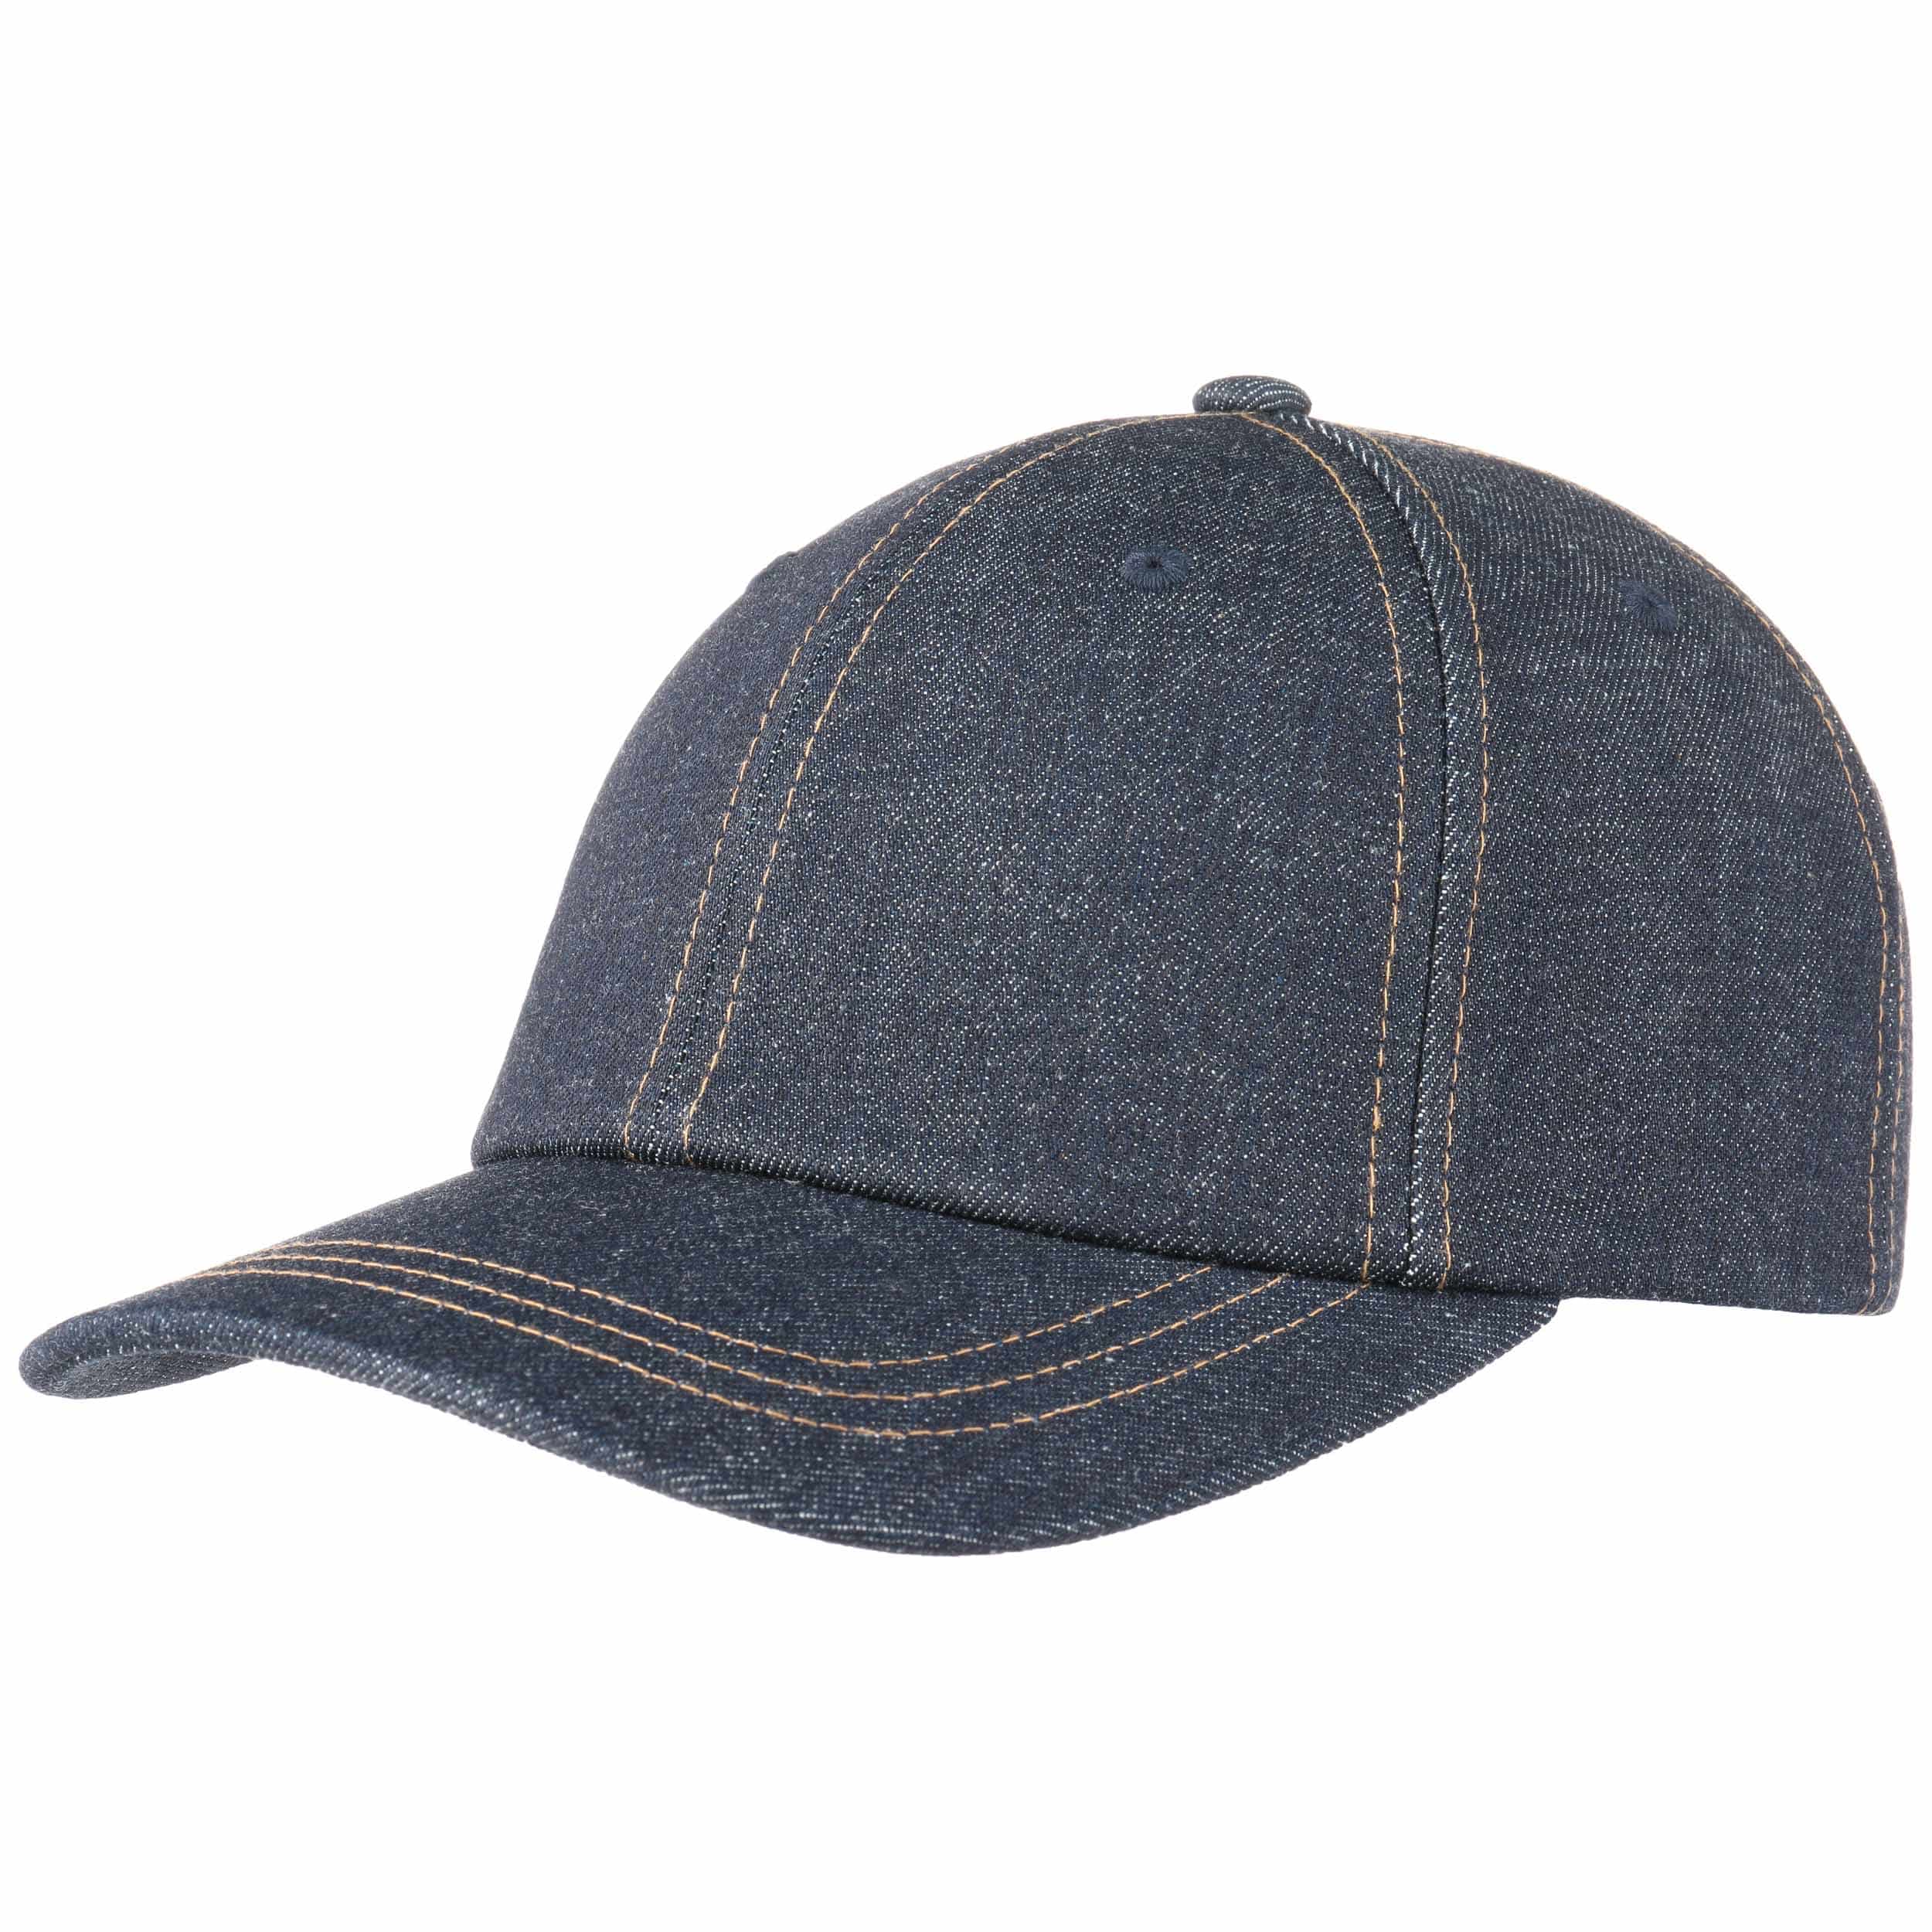 Unhooky Denim Cap By Levi´s Eur 2995 Hats Caps And Beanies Shop